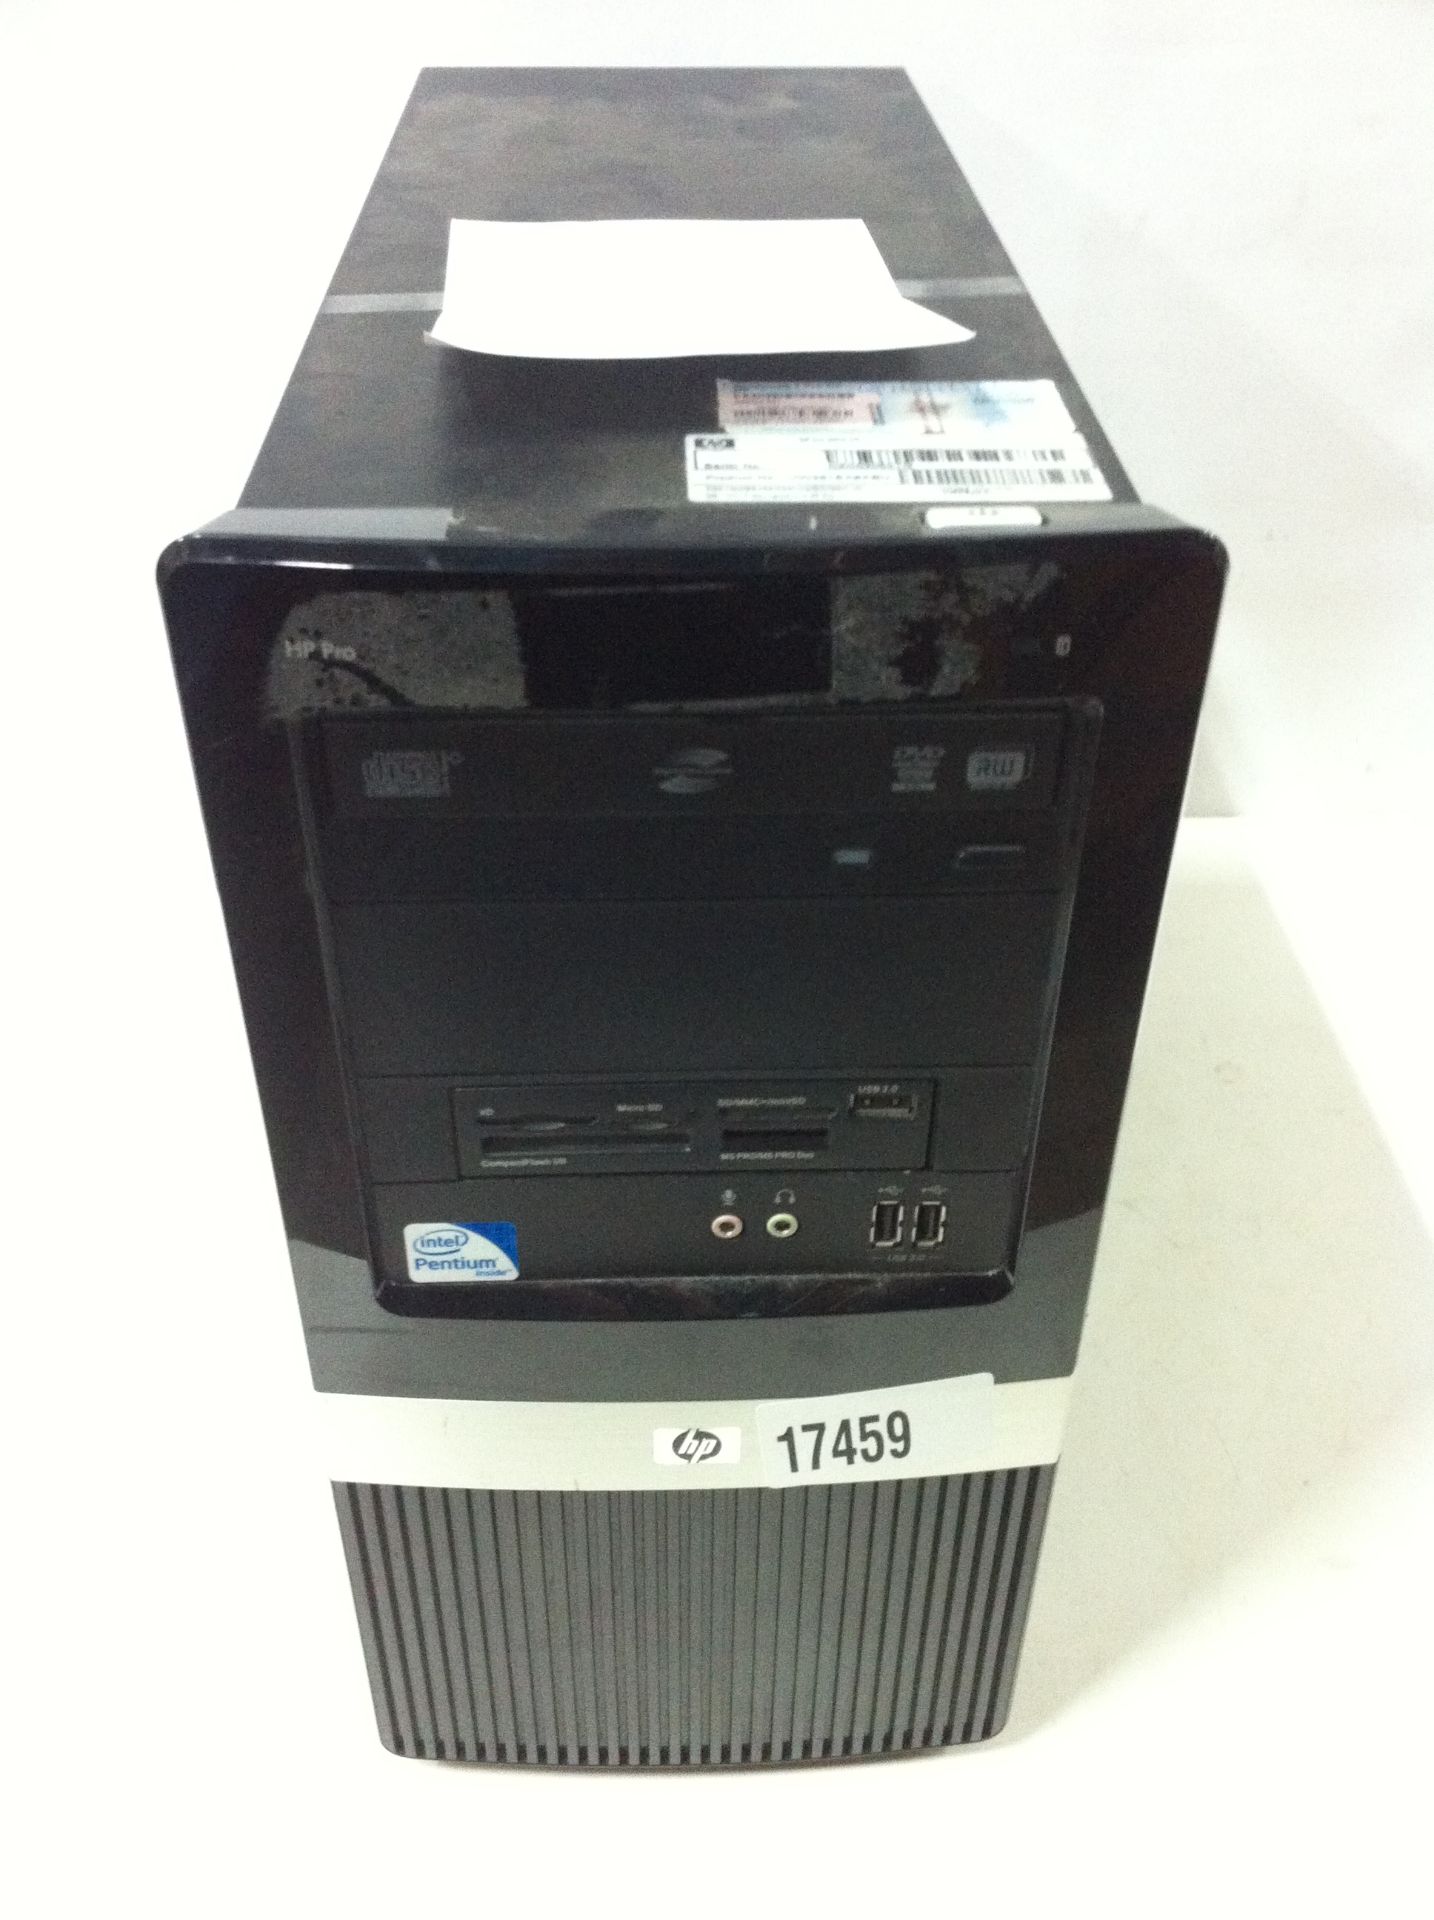 5x HP Desktop PC's - See Description - Image 3 of 6